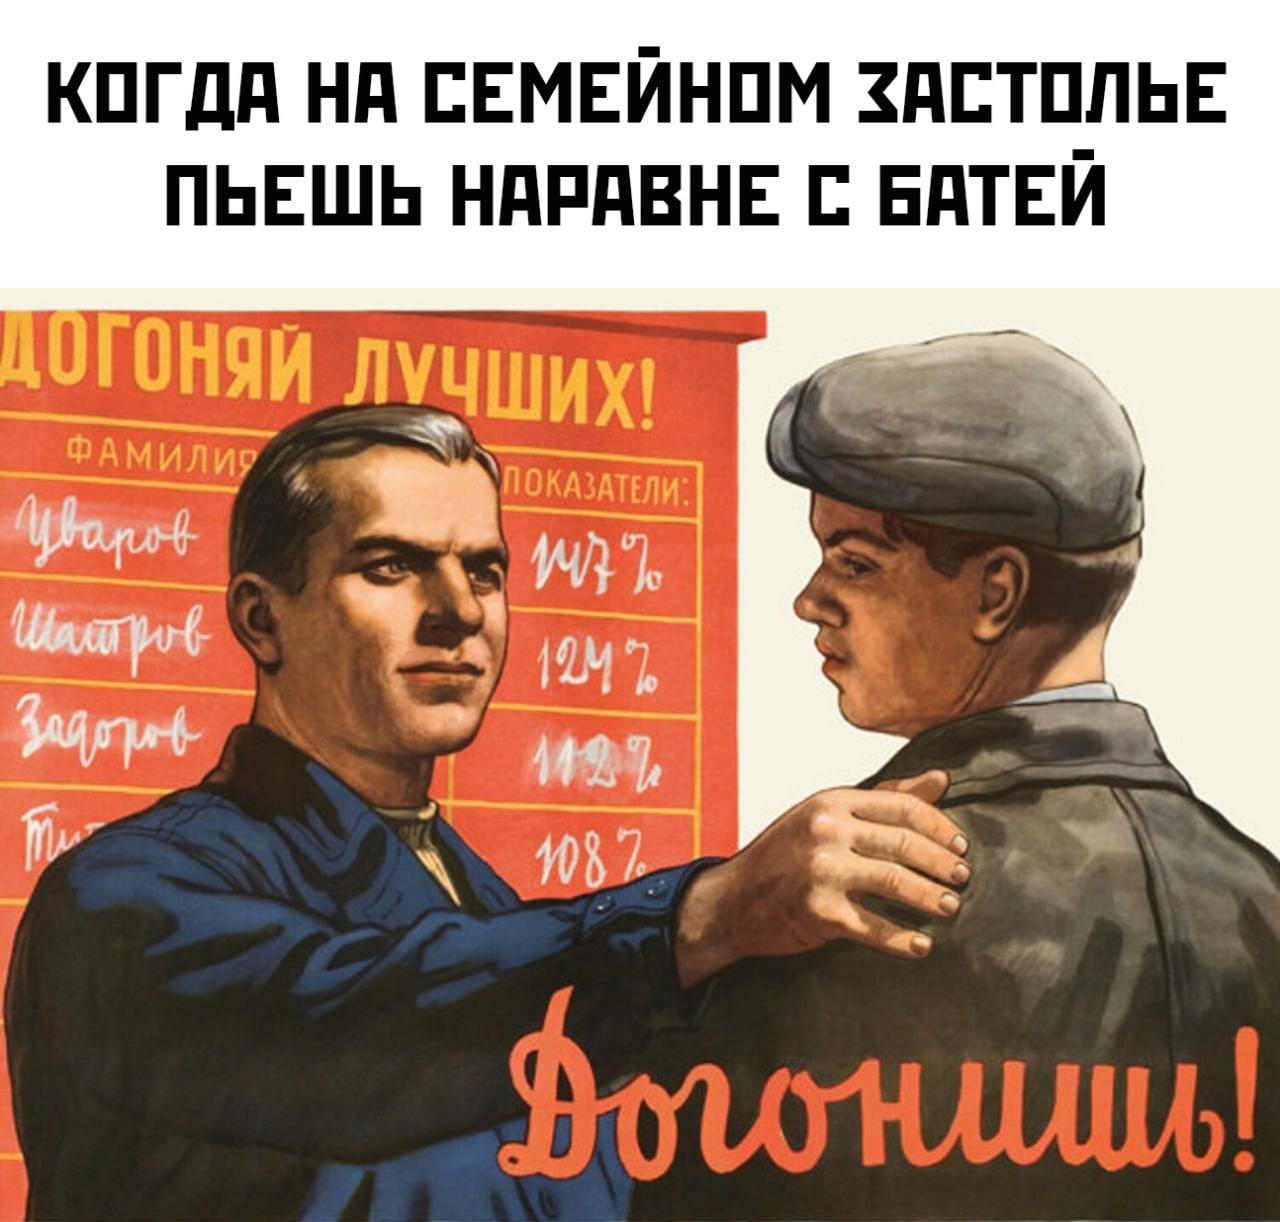 Понять догнать. Советские плакаты товарищ. Прикольные переделанные советские плакаты. Советские плакаты про работу. Советские плакаты приколы юмор.